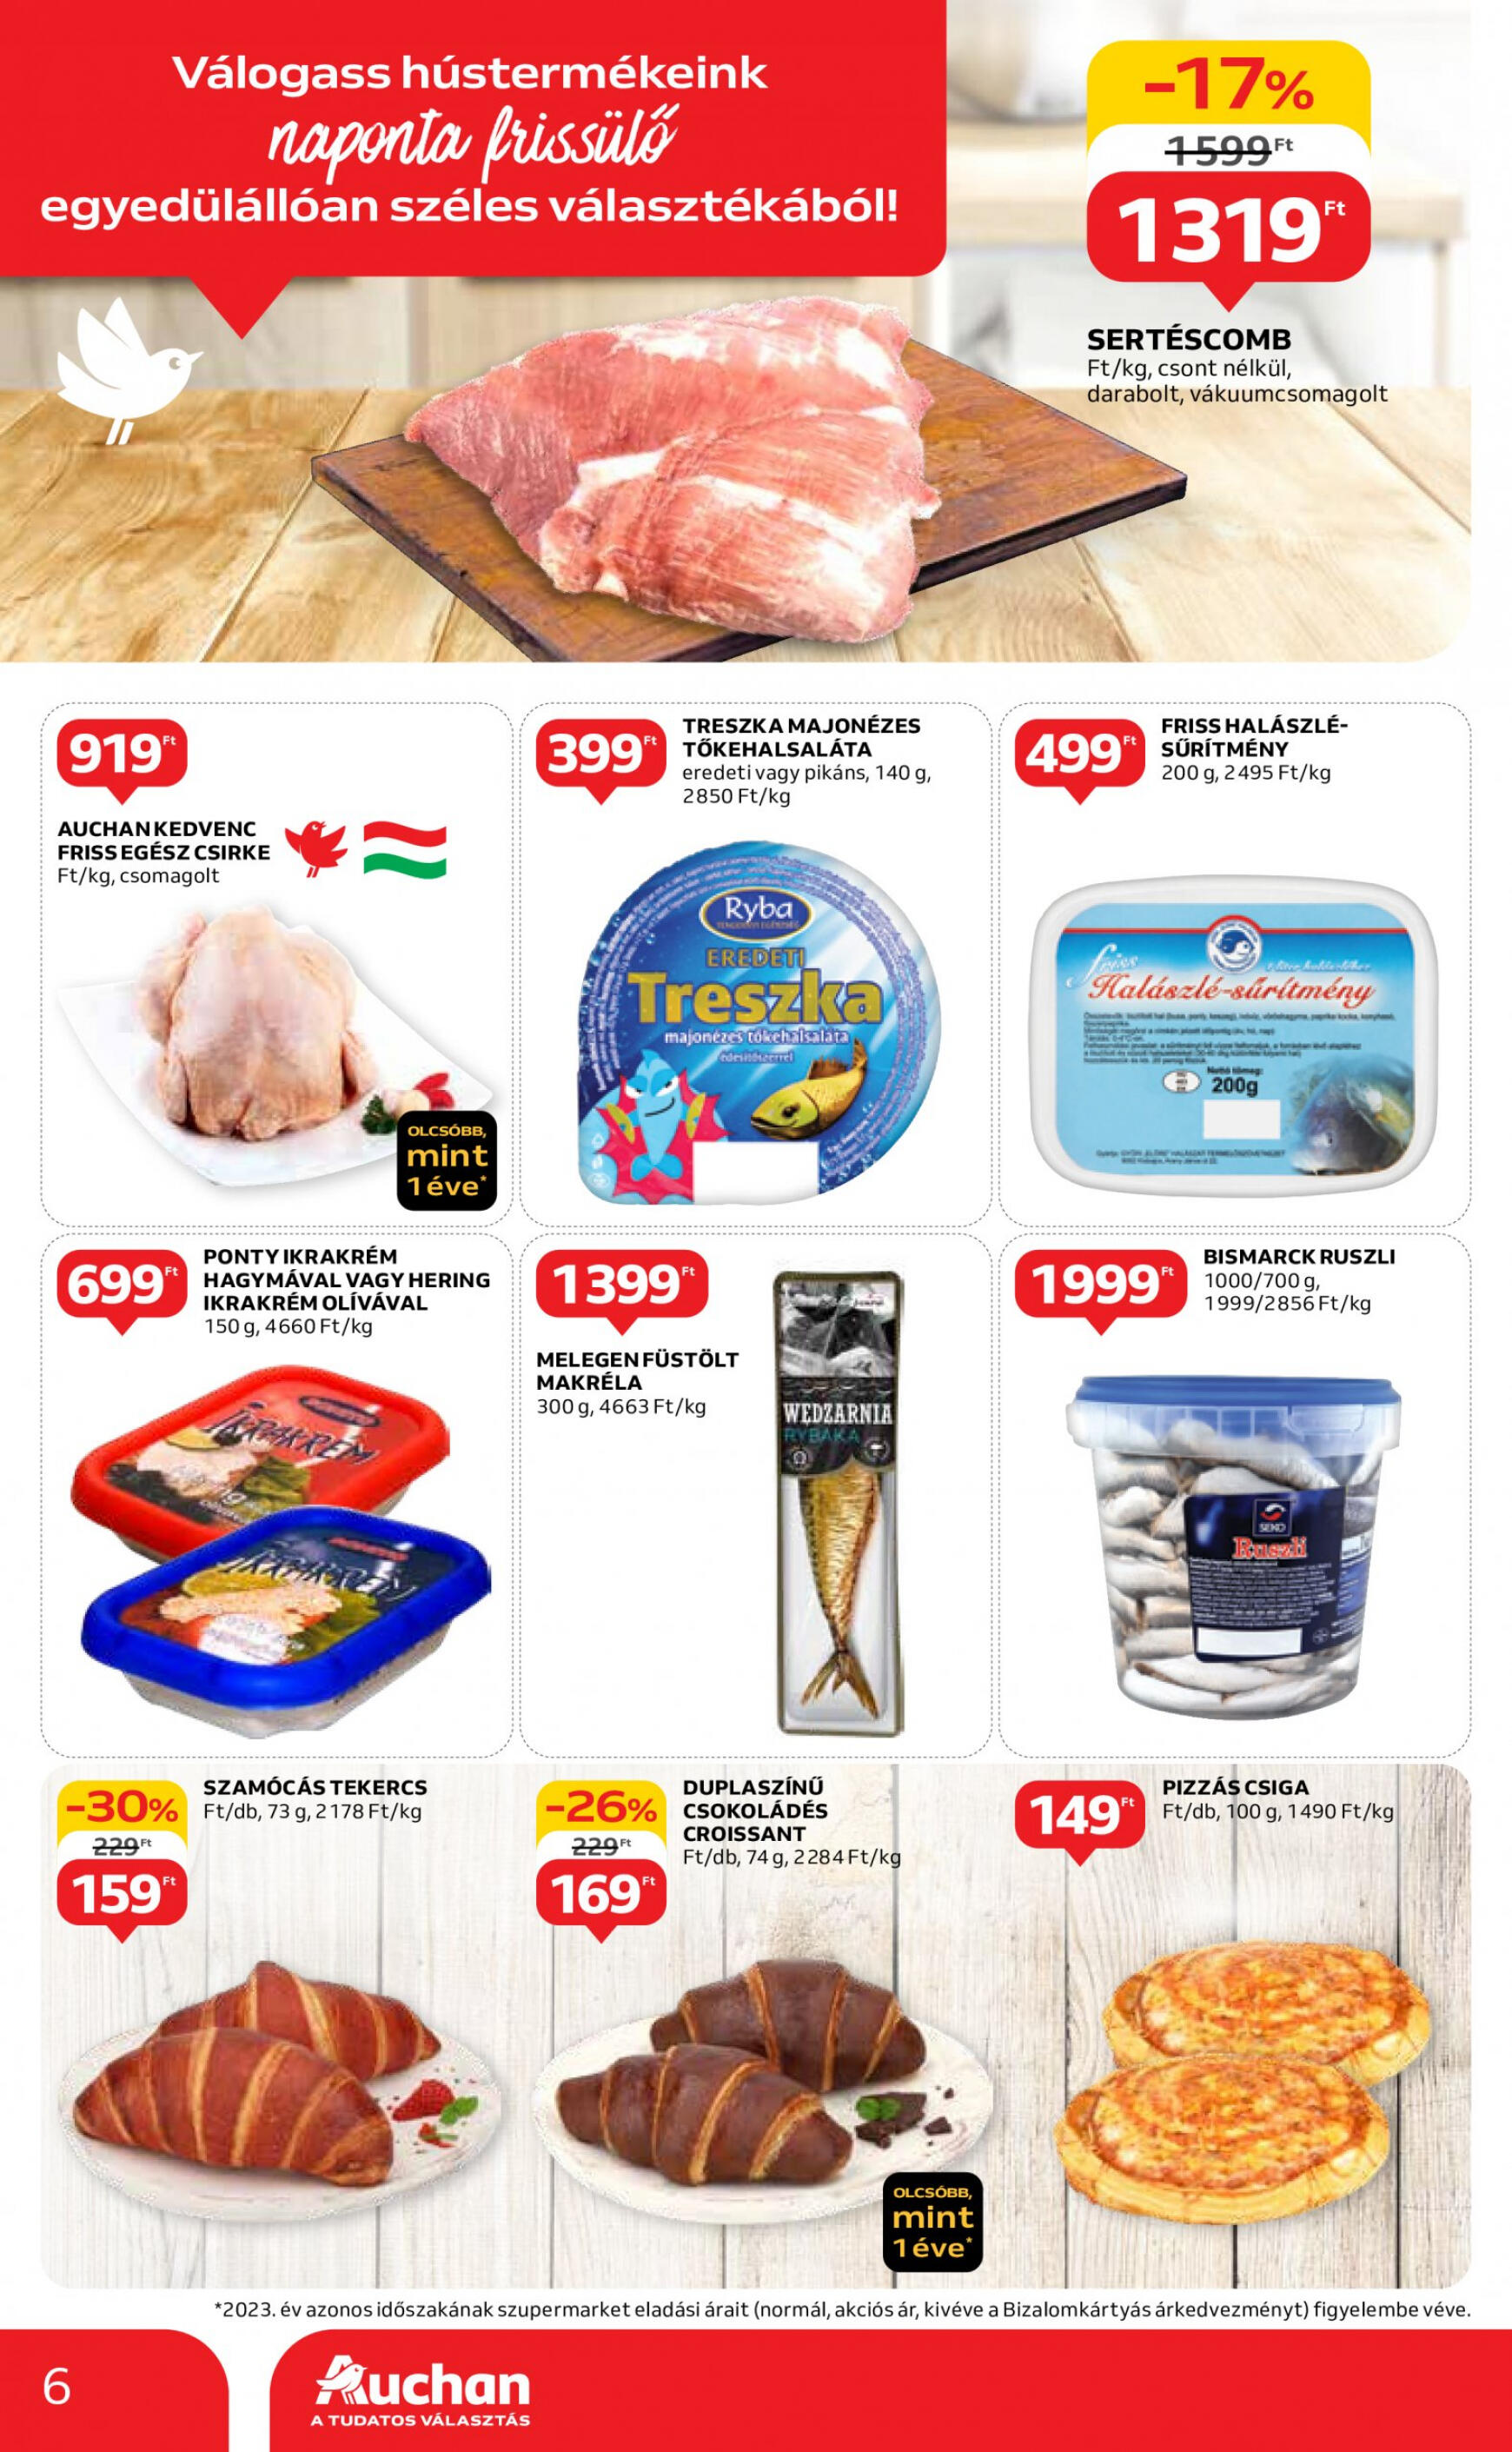 auchan - Aktuális újság Auchan szupermarket 05.02. - 05.08. - page: 6